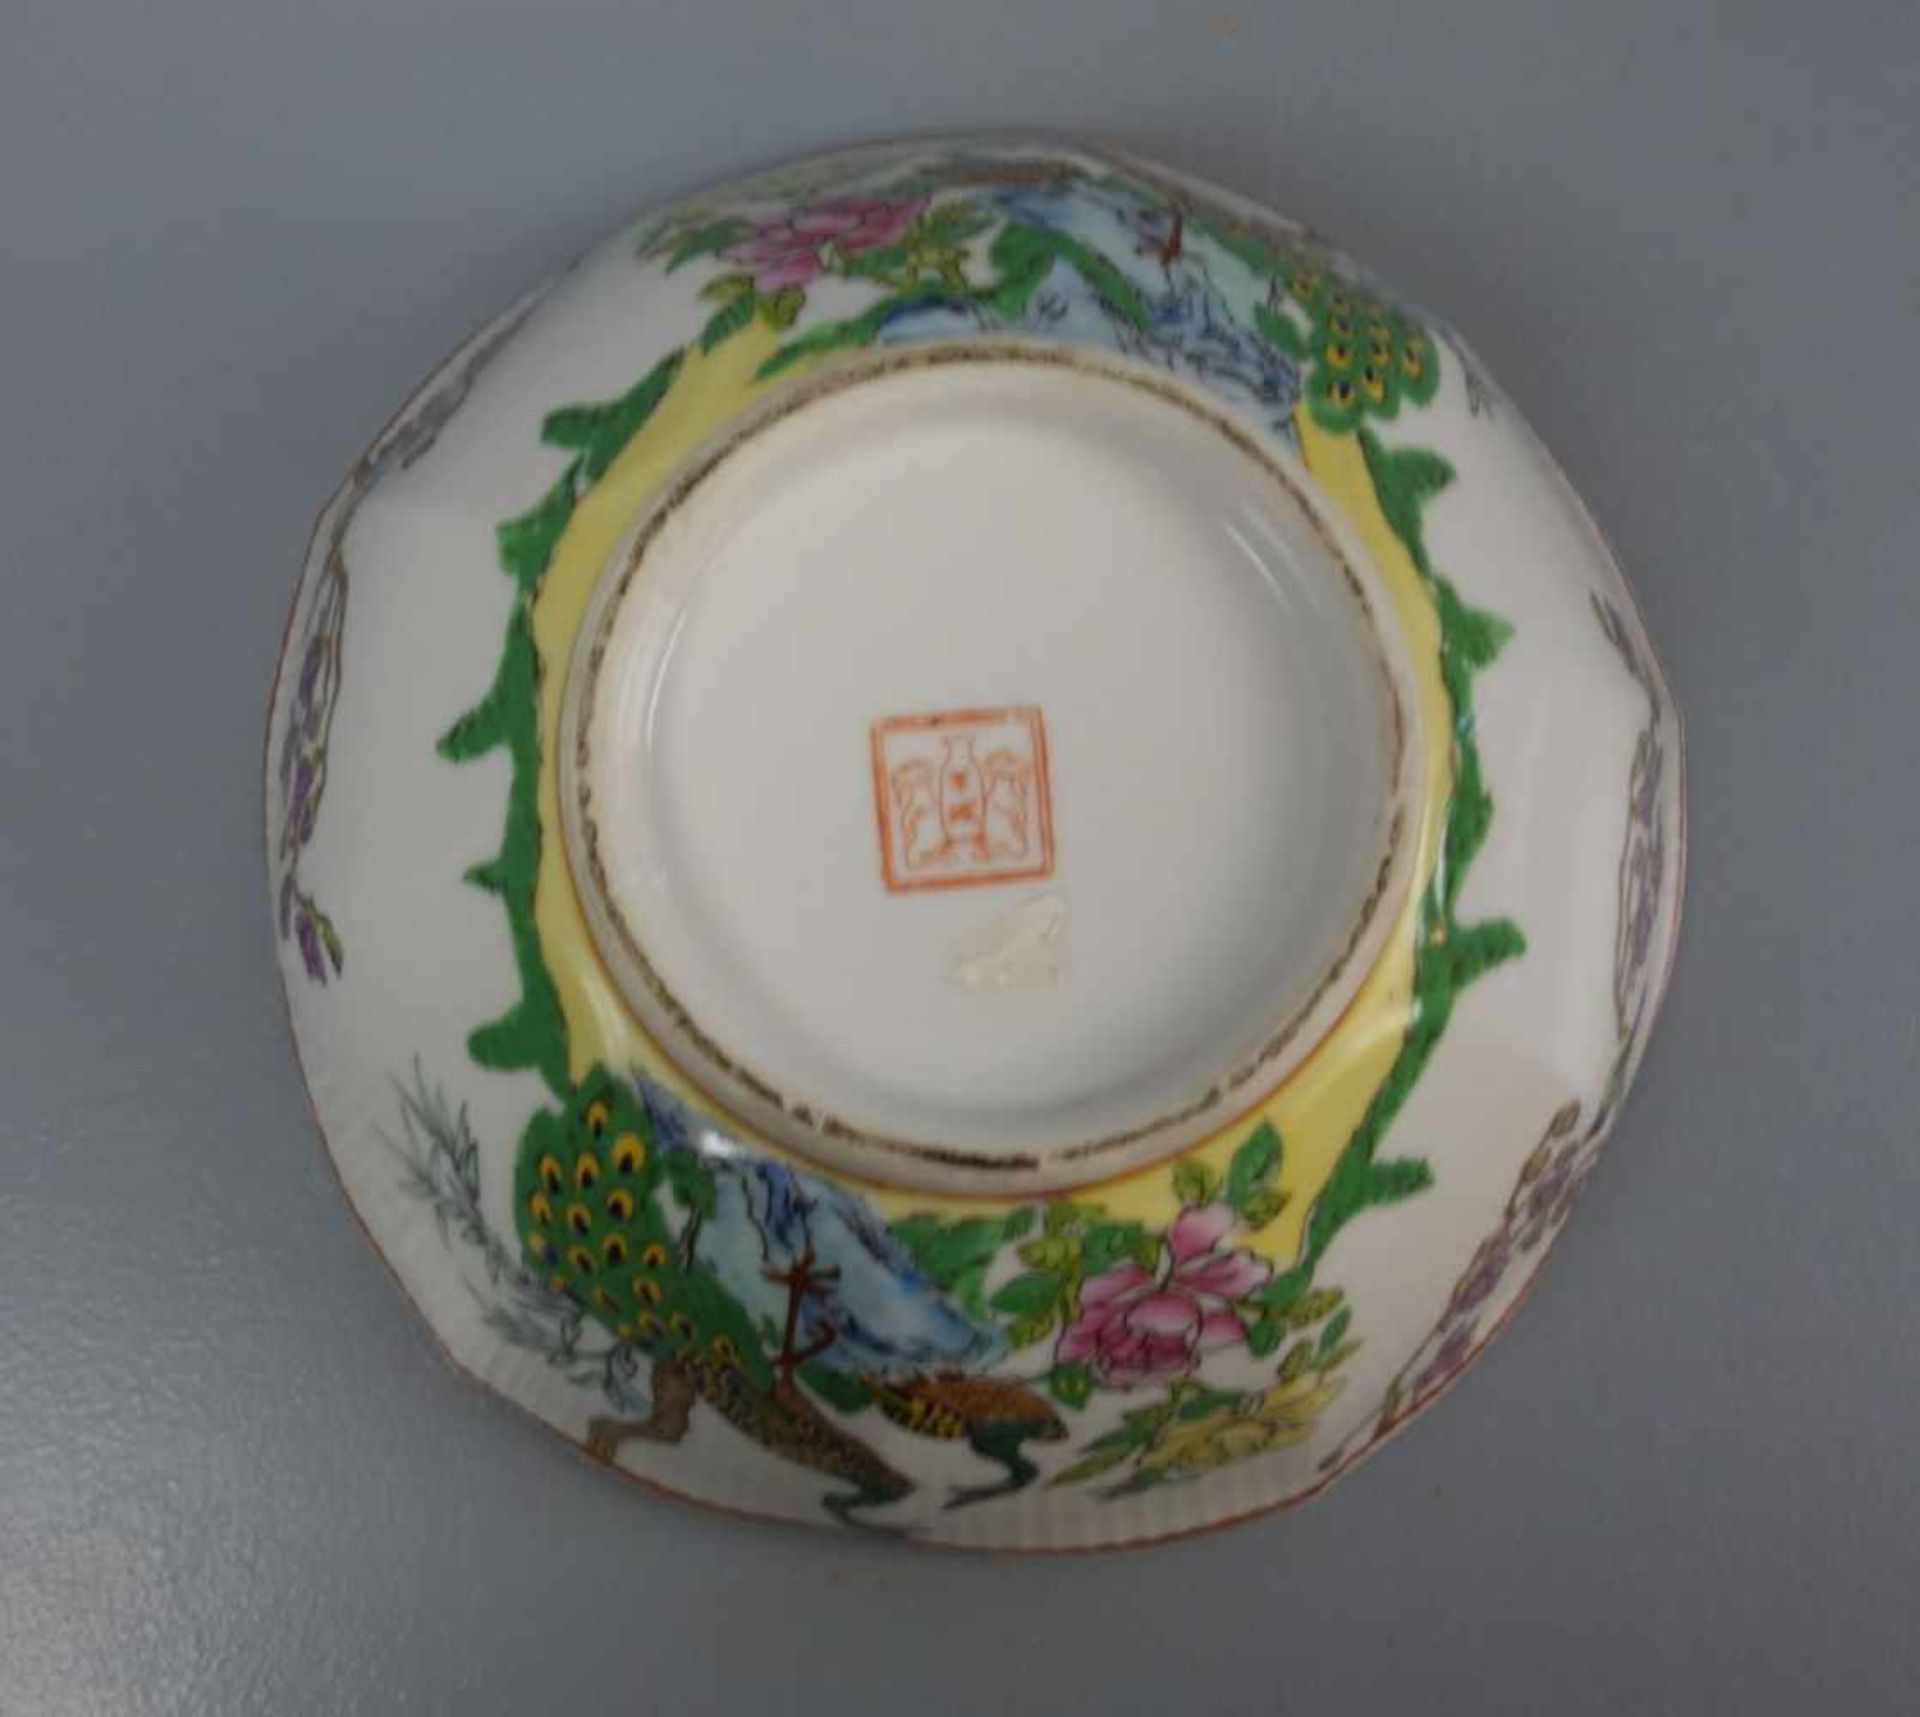 CHINESISCHE SCHALE / bowl, Porzellan, unter dem Stand aufglasurrot gemarkt mit Vasenmotiv, flankiert - Image 3 of 4